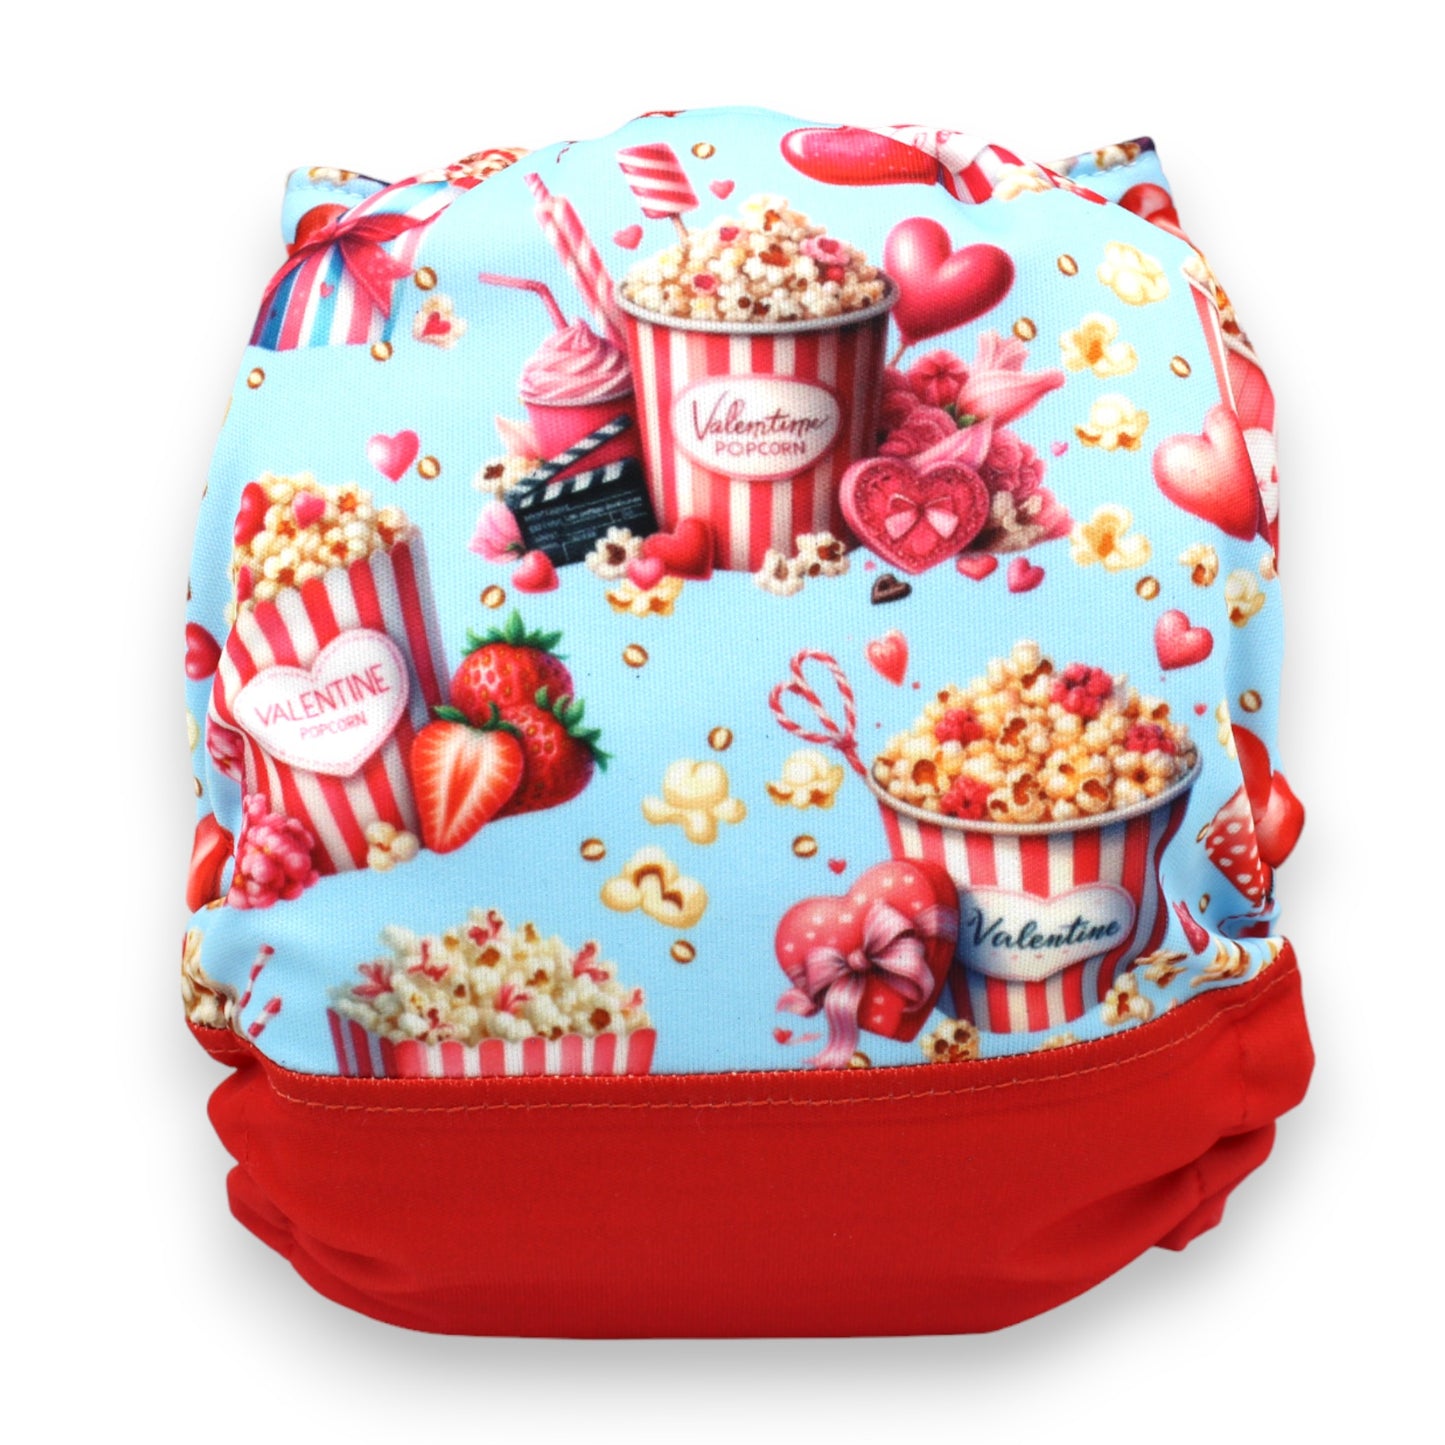 Couches - Valentine Popcorn (7375903391881)